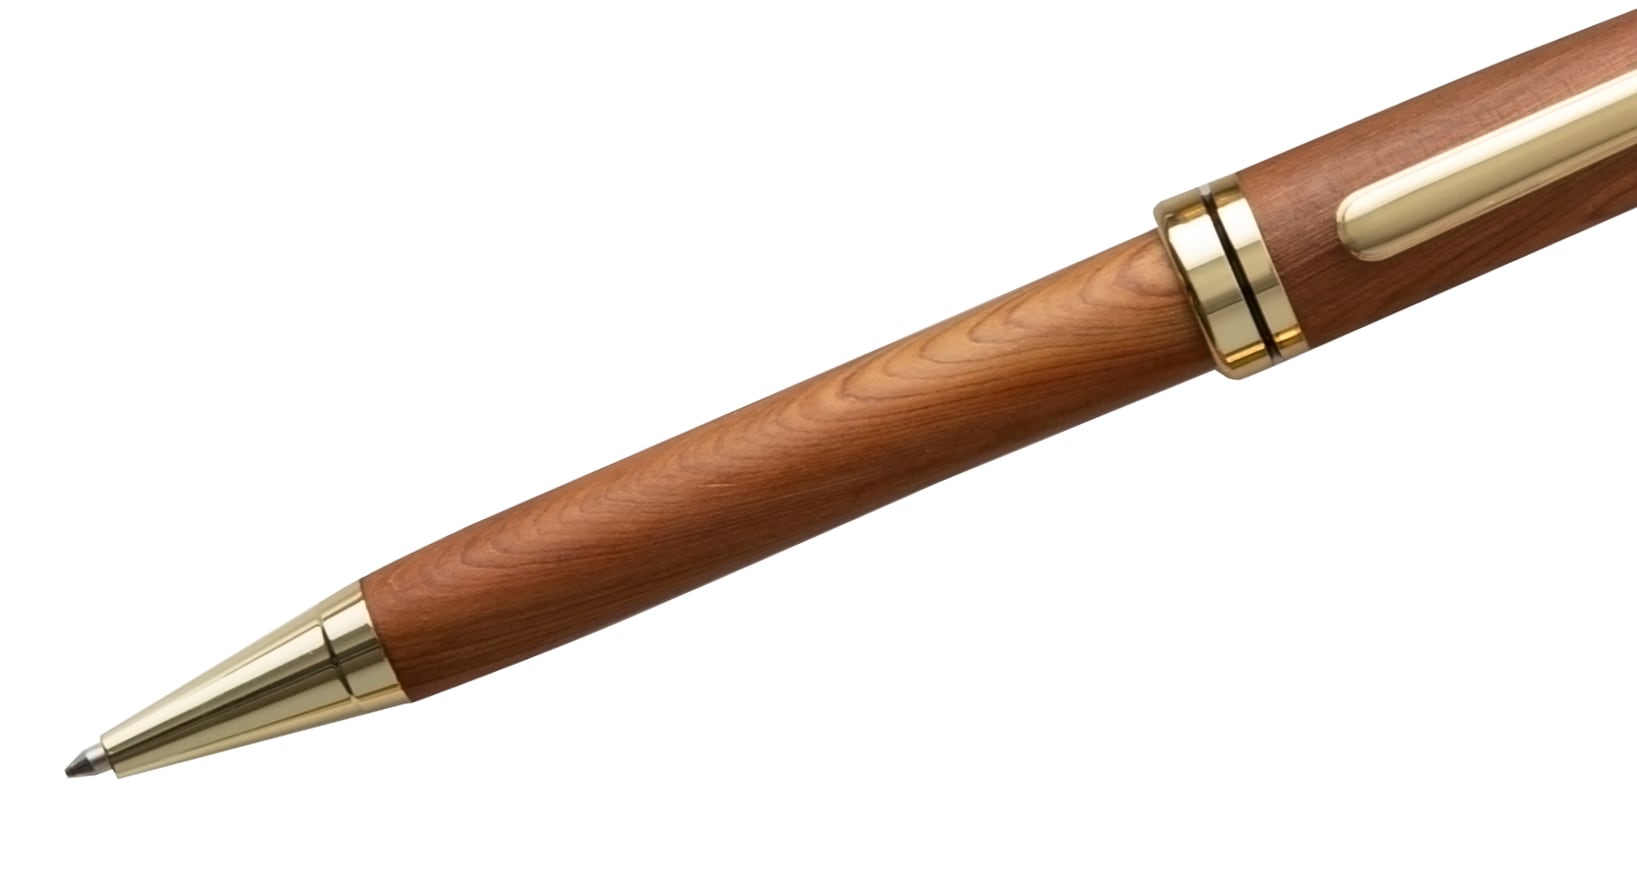 日光杉並木手作りボールペン『ふるさと』 | 日光杉並木工芸制作・販売